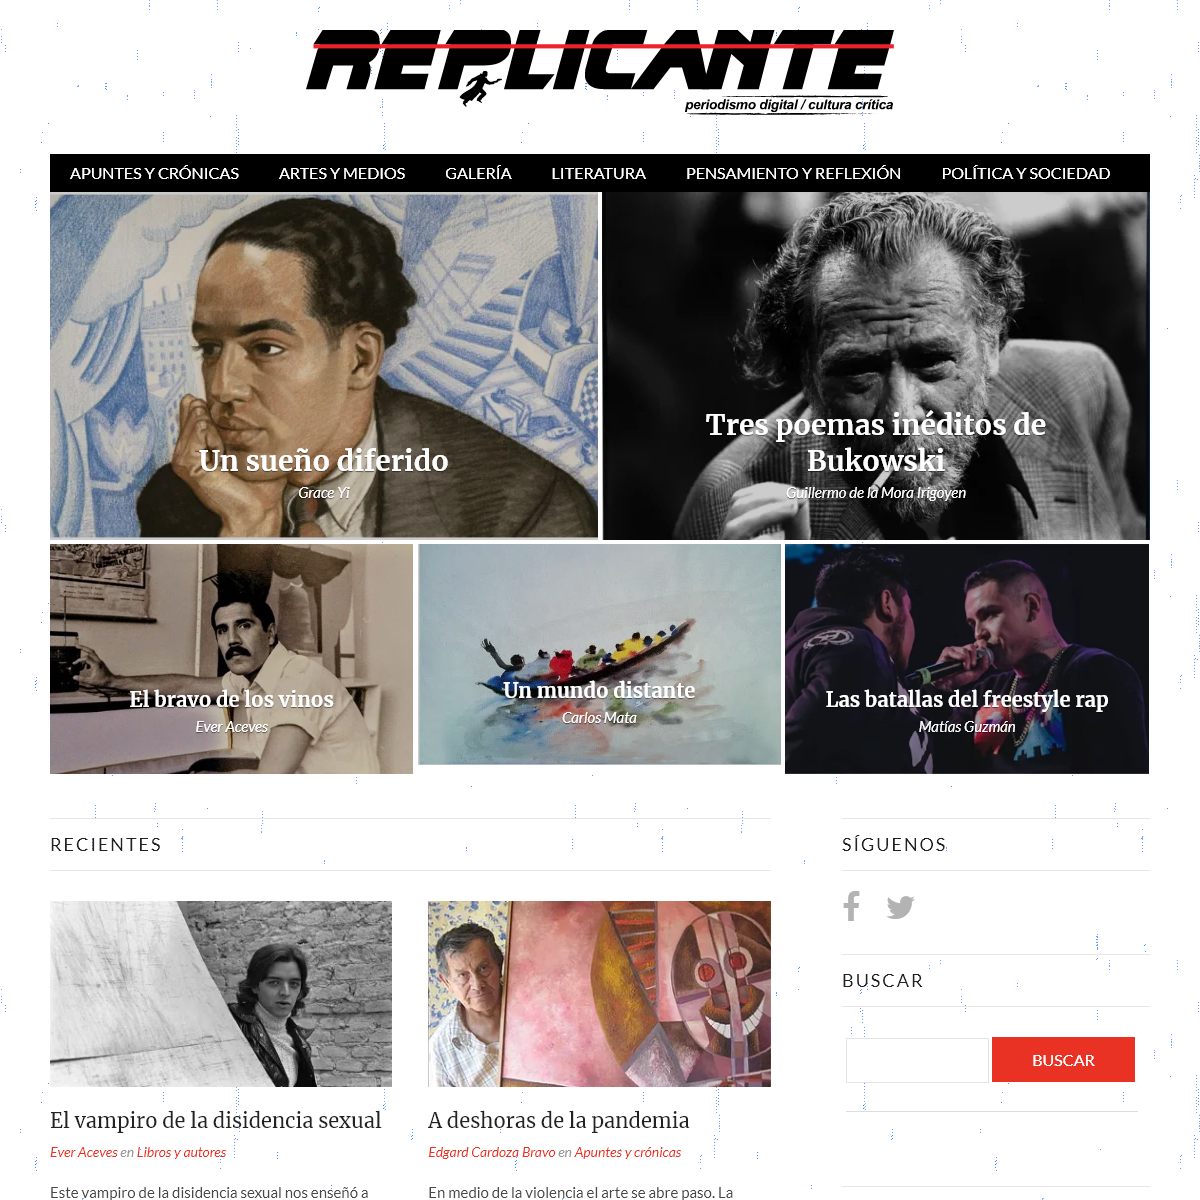 A complete backup of revistareplicante.com